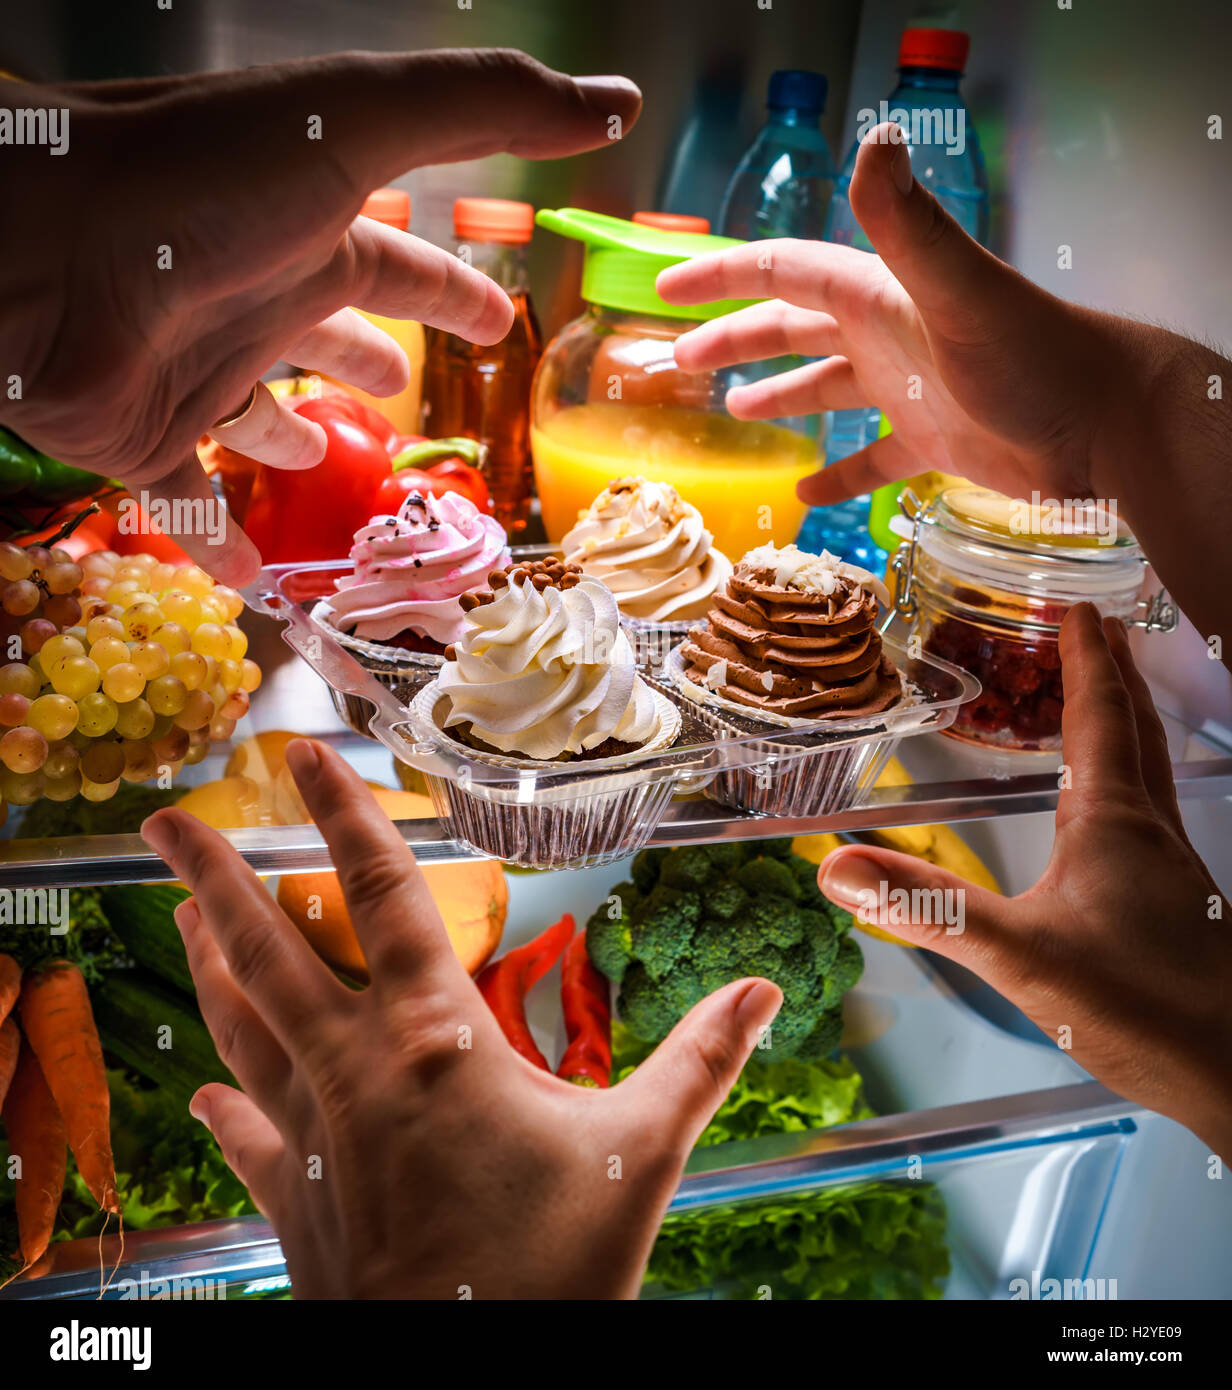 Le mani umane raggiungendo per la torta dolce di notte nel frigorifero aperto Foto Stock